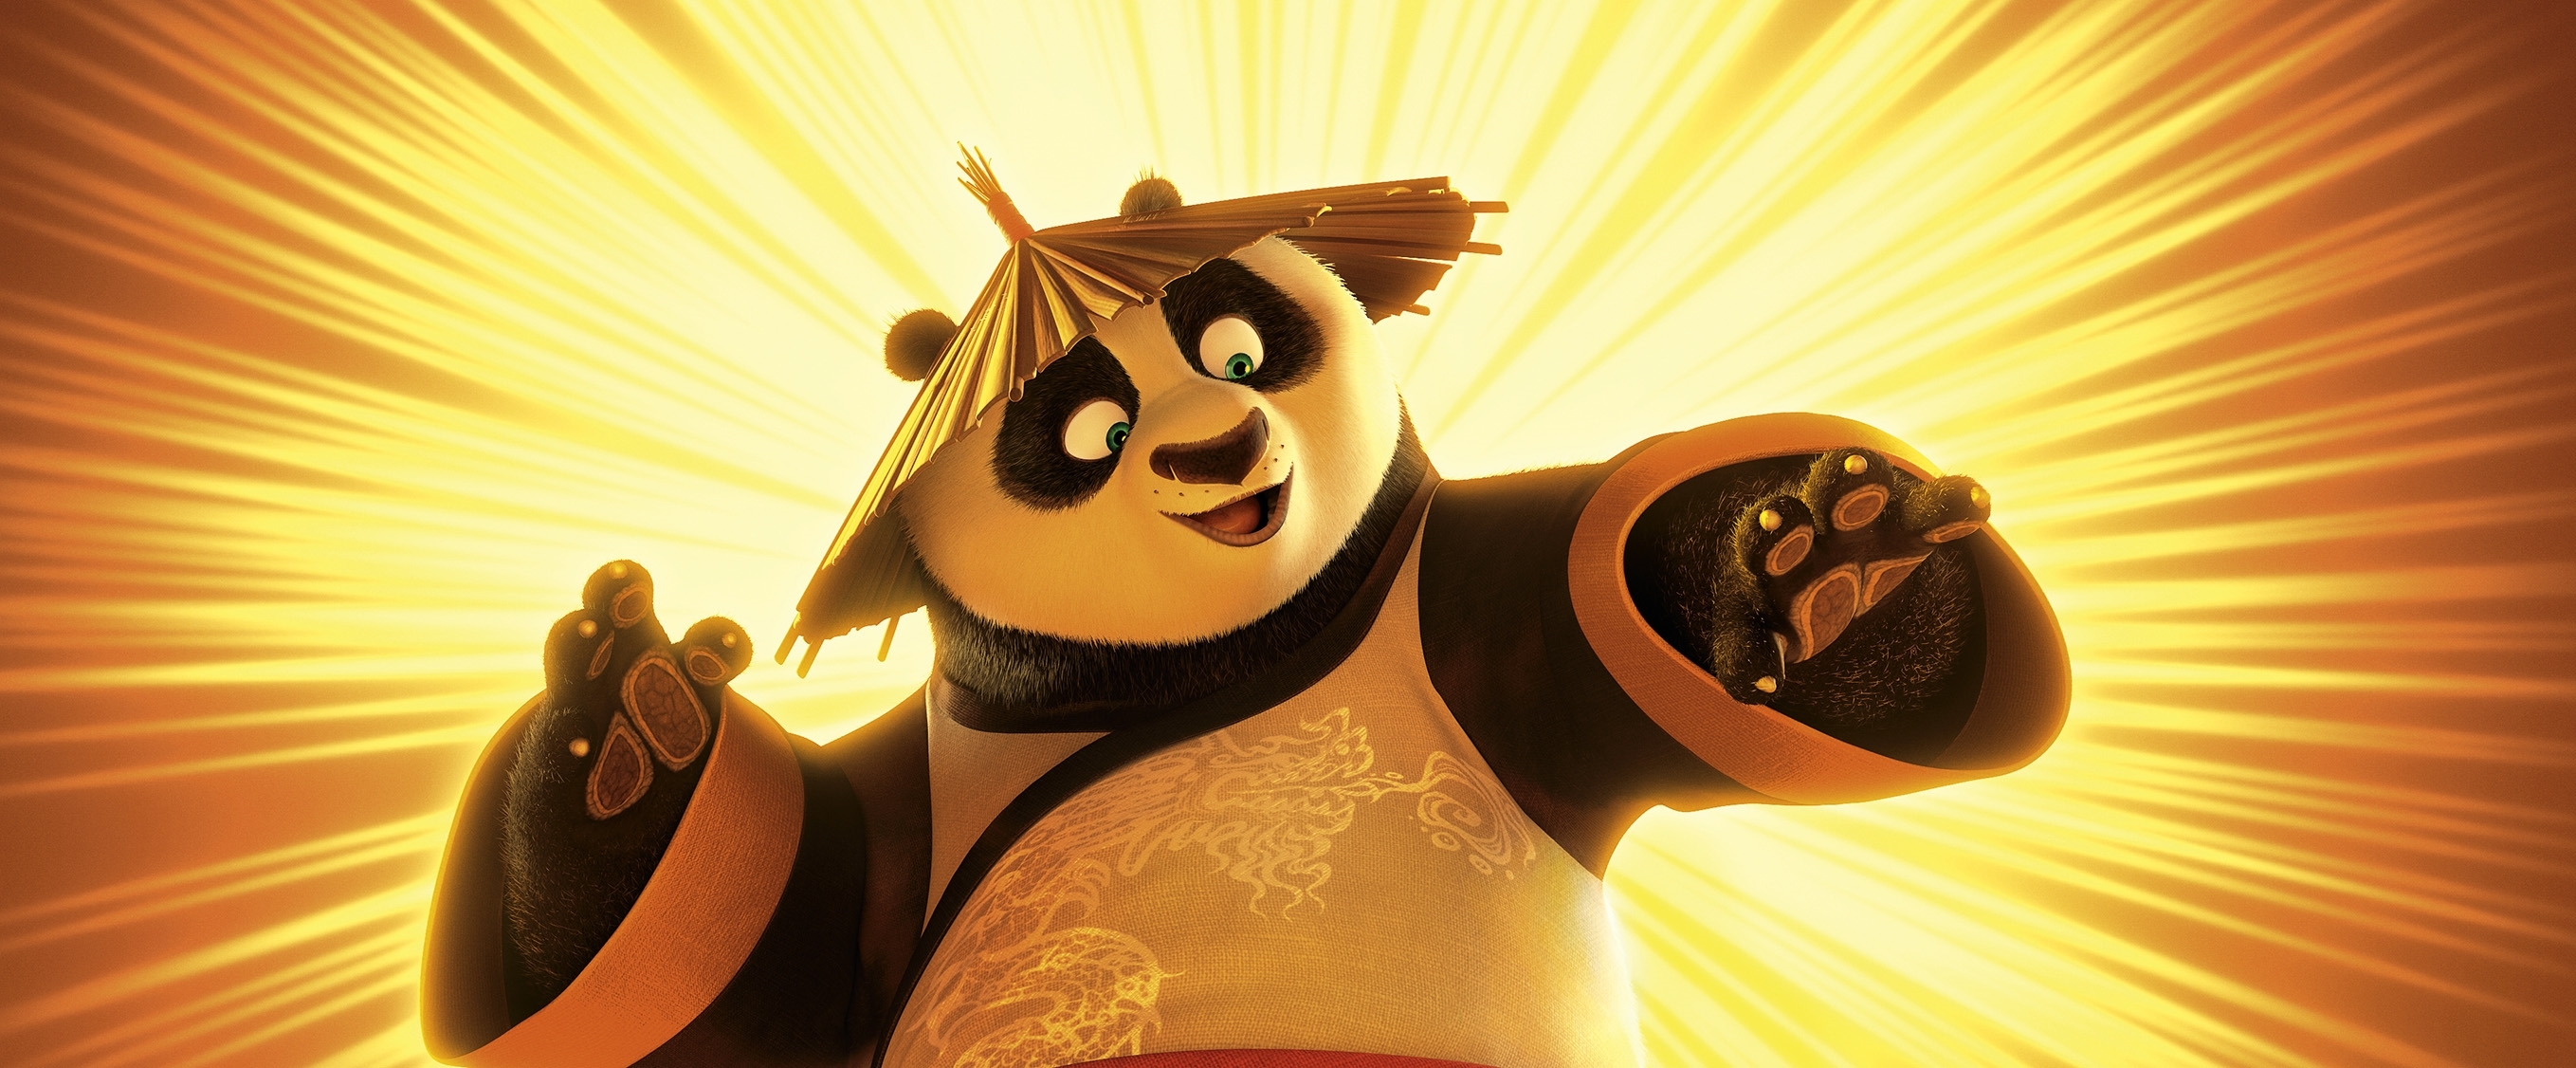 Image du film Kung Fu Panda 3 bac21c58-bc29-4c31-a680-c71841a6cc32